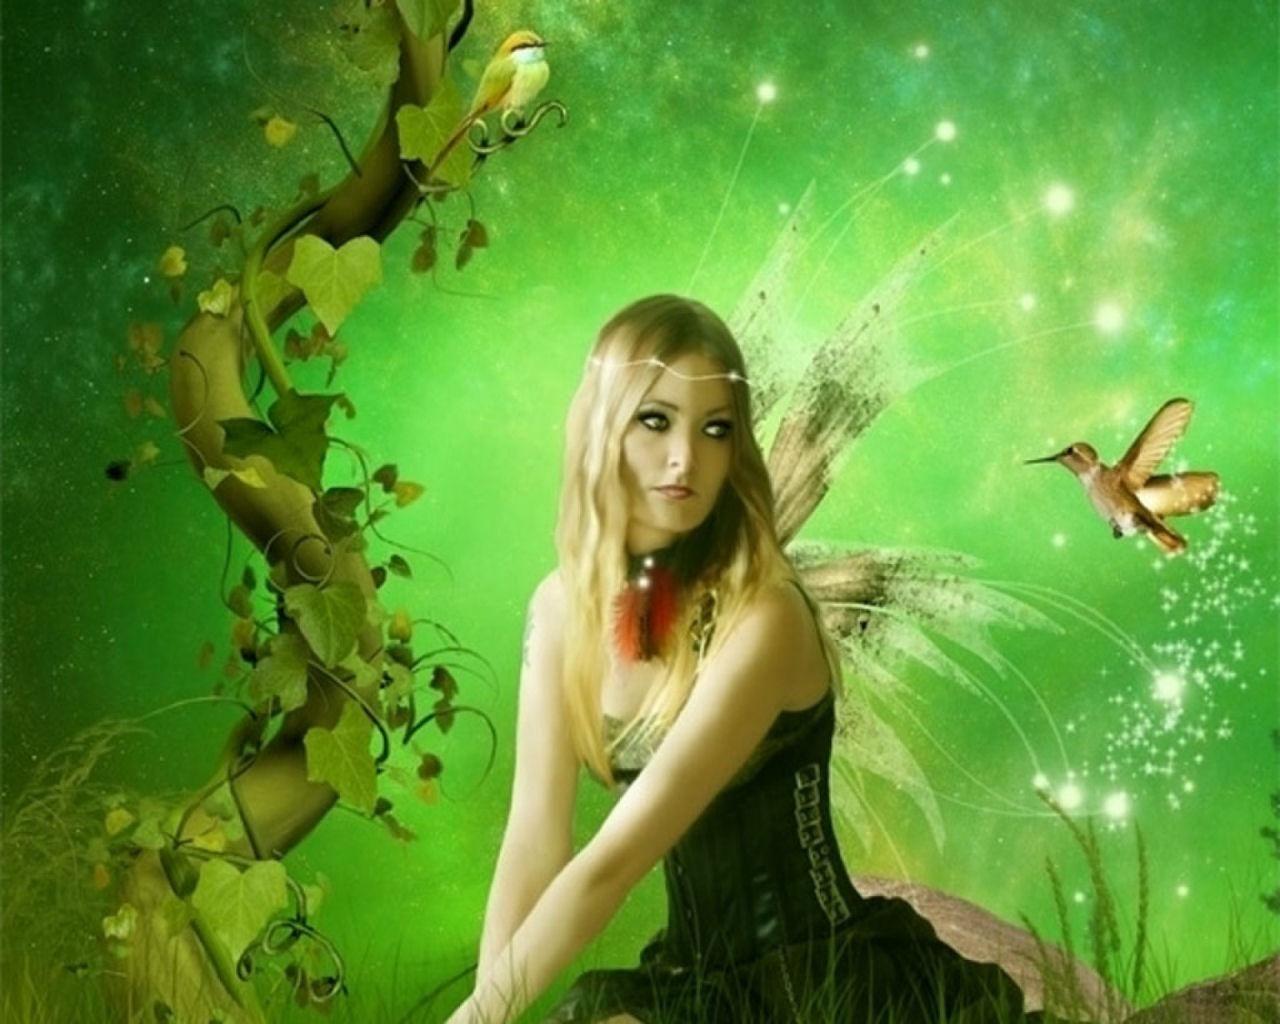 Butterfly Woman Fantasy - HD Wallpaper 